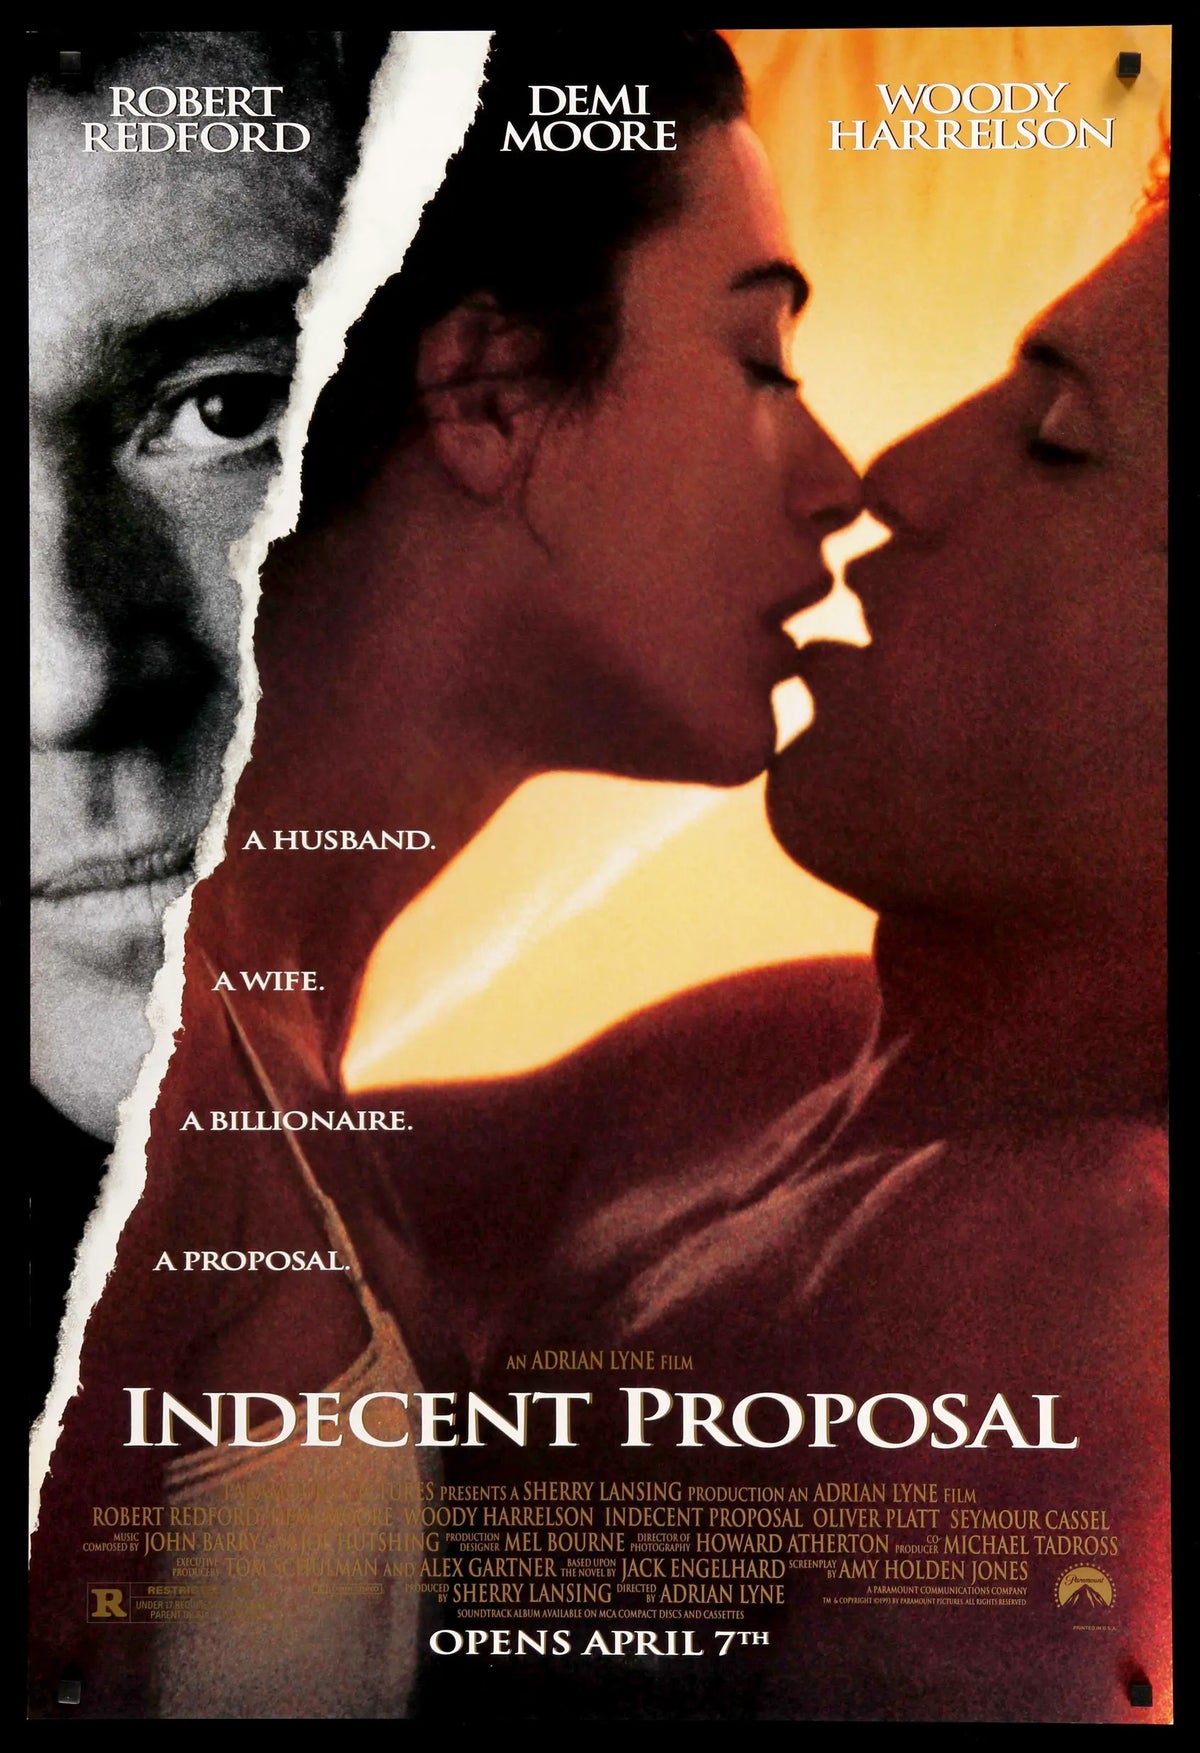 Indecent Proposal (1993) original movie poster for sale at Original Film Art